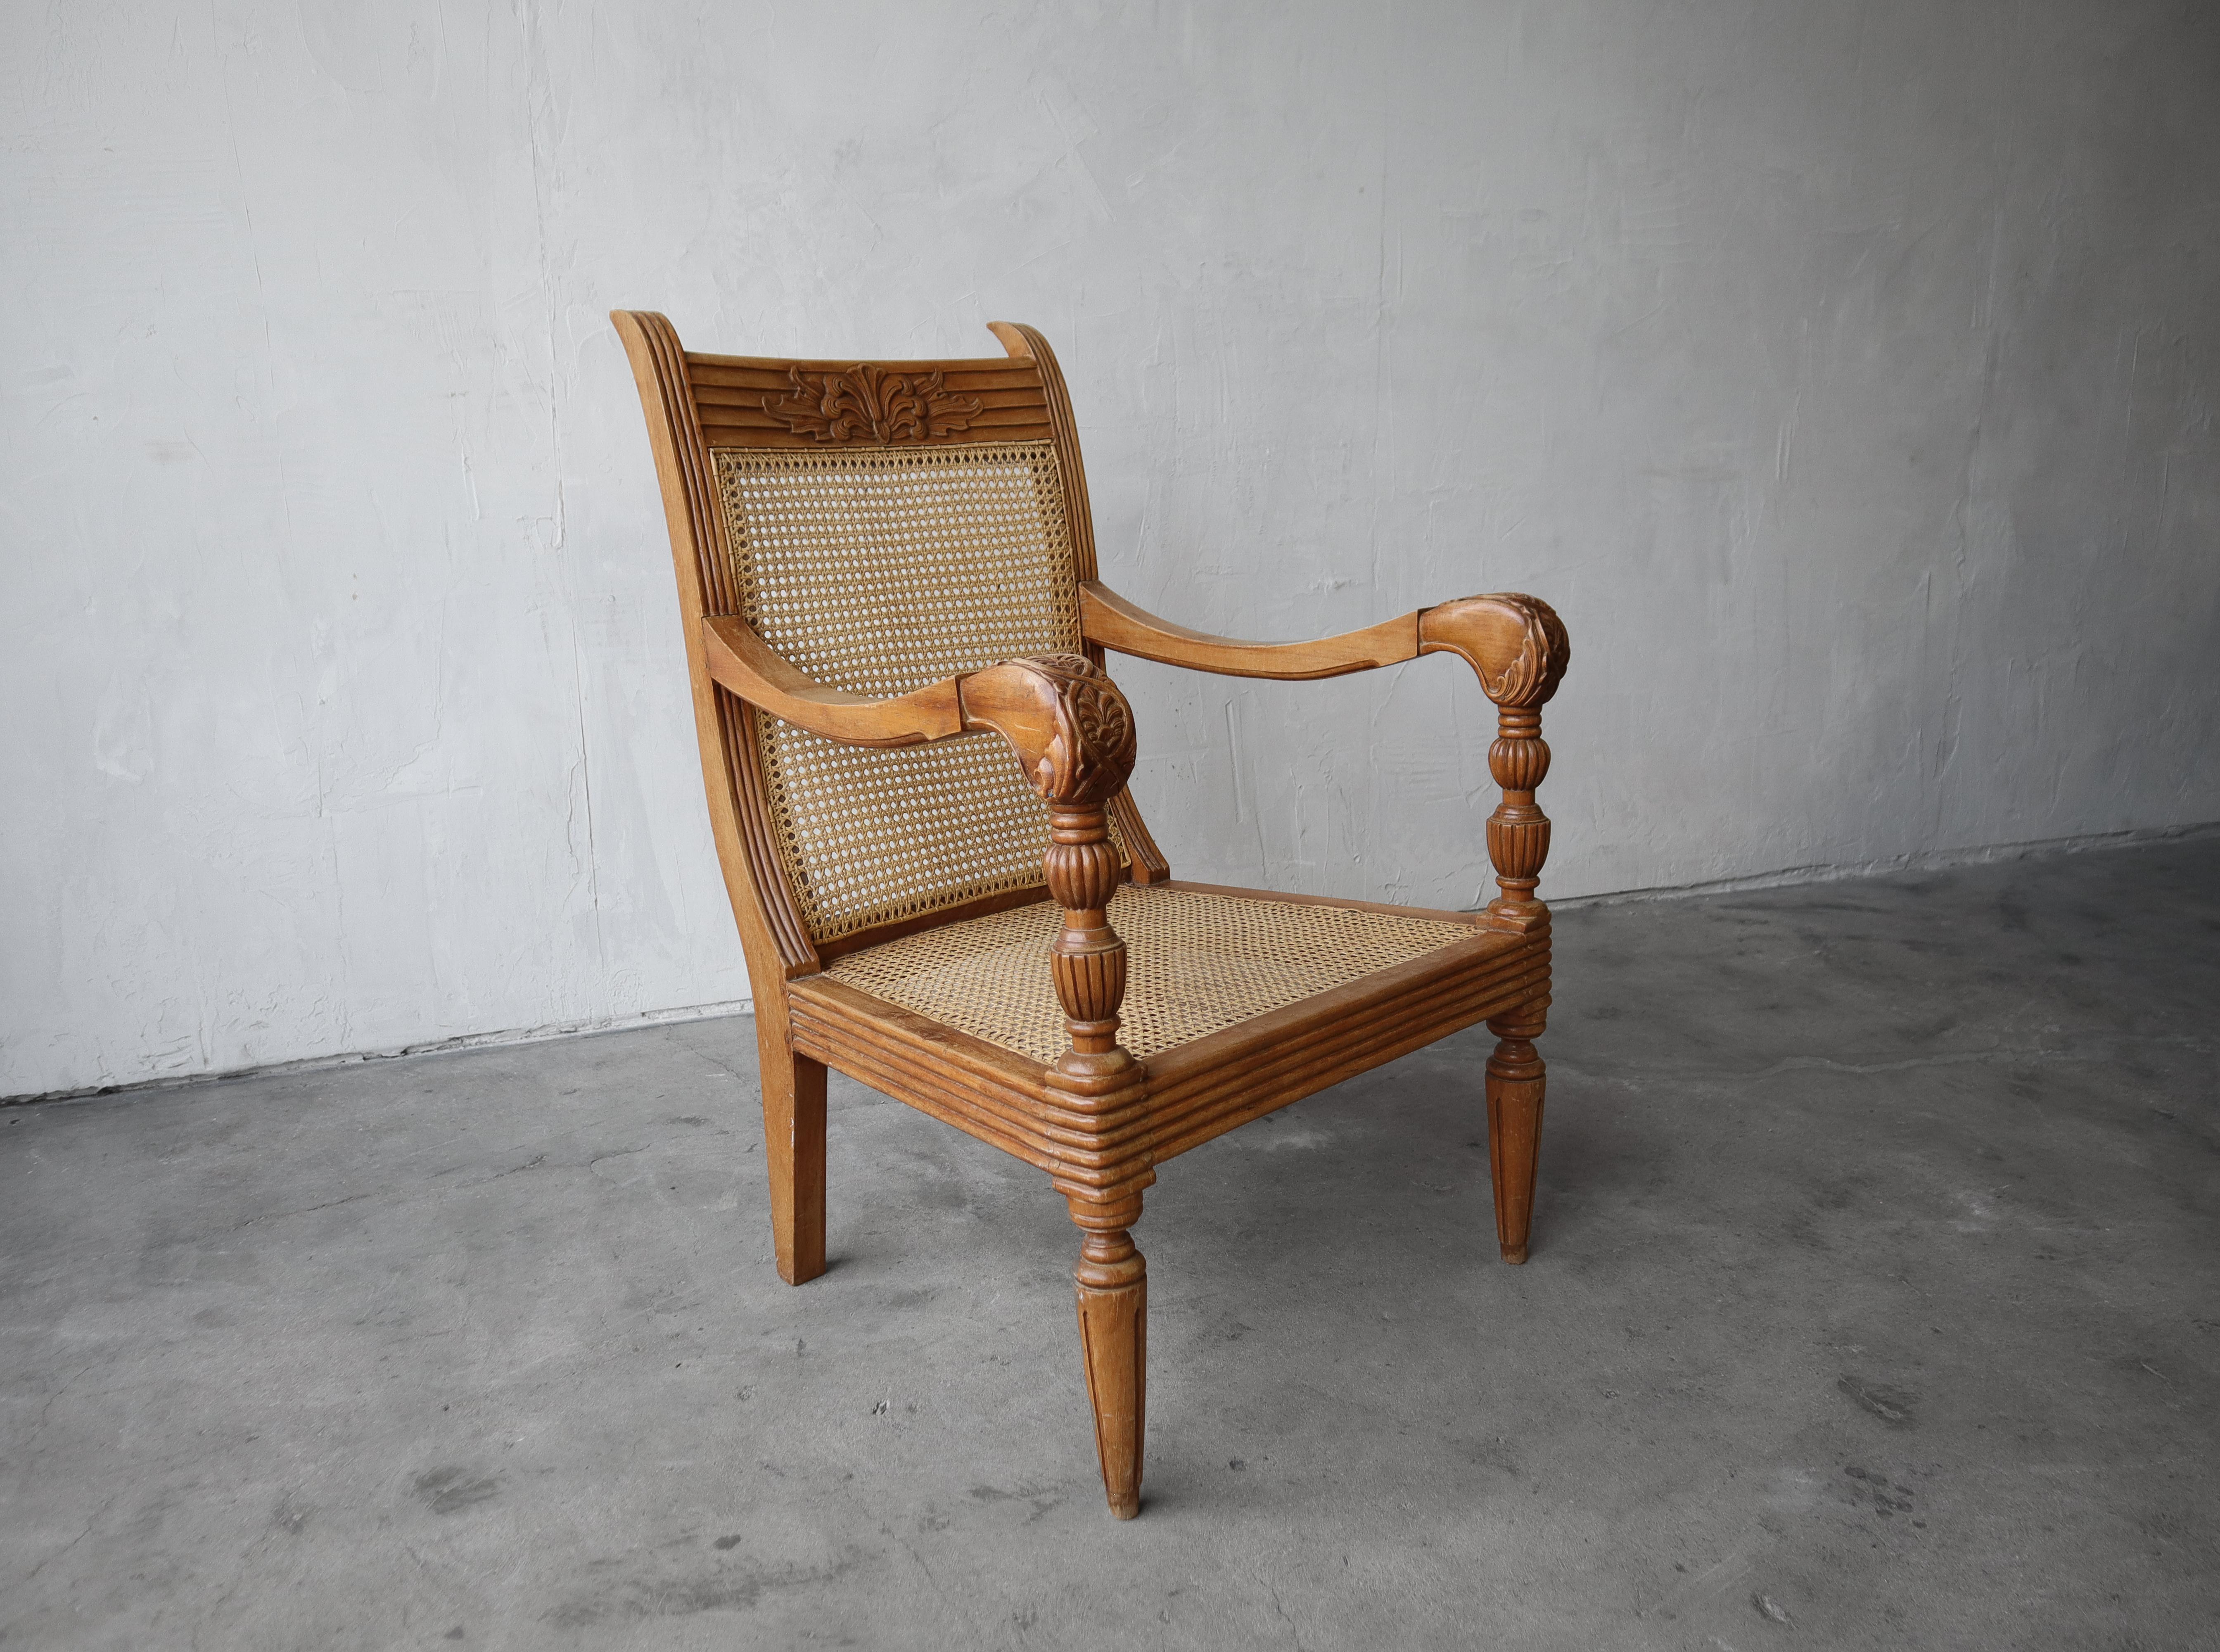 Magnifique chaise longue ancienne en teck sculpté et en rotin. La beauté est vraiment dans les détails de cette chaise. Les bois sculptés et tournés sont étonnants. Il est en excellent état pour son âge. Il y a une légère patine d'âge et